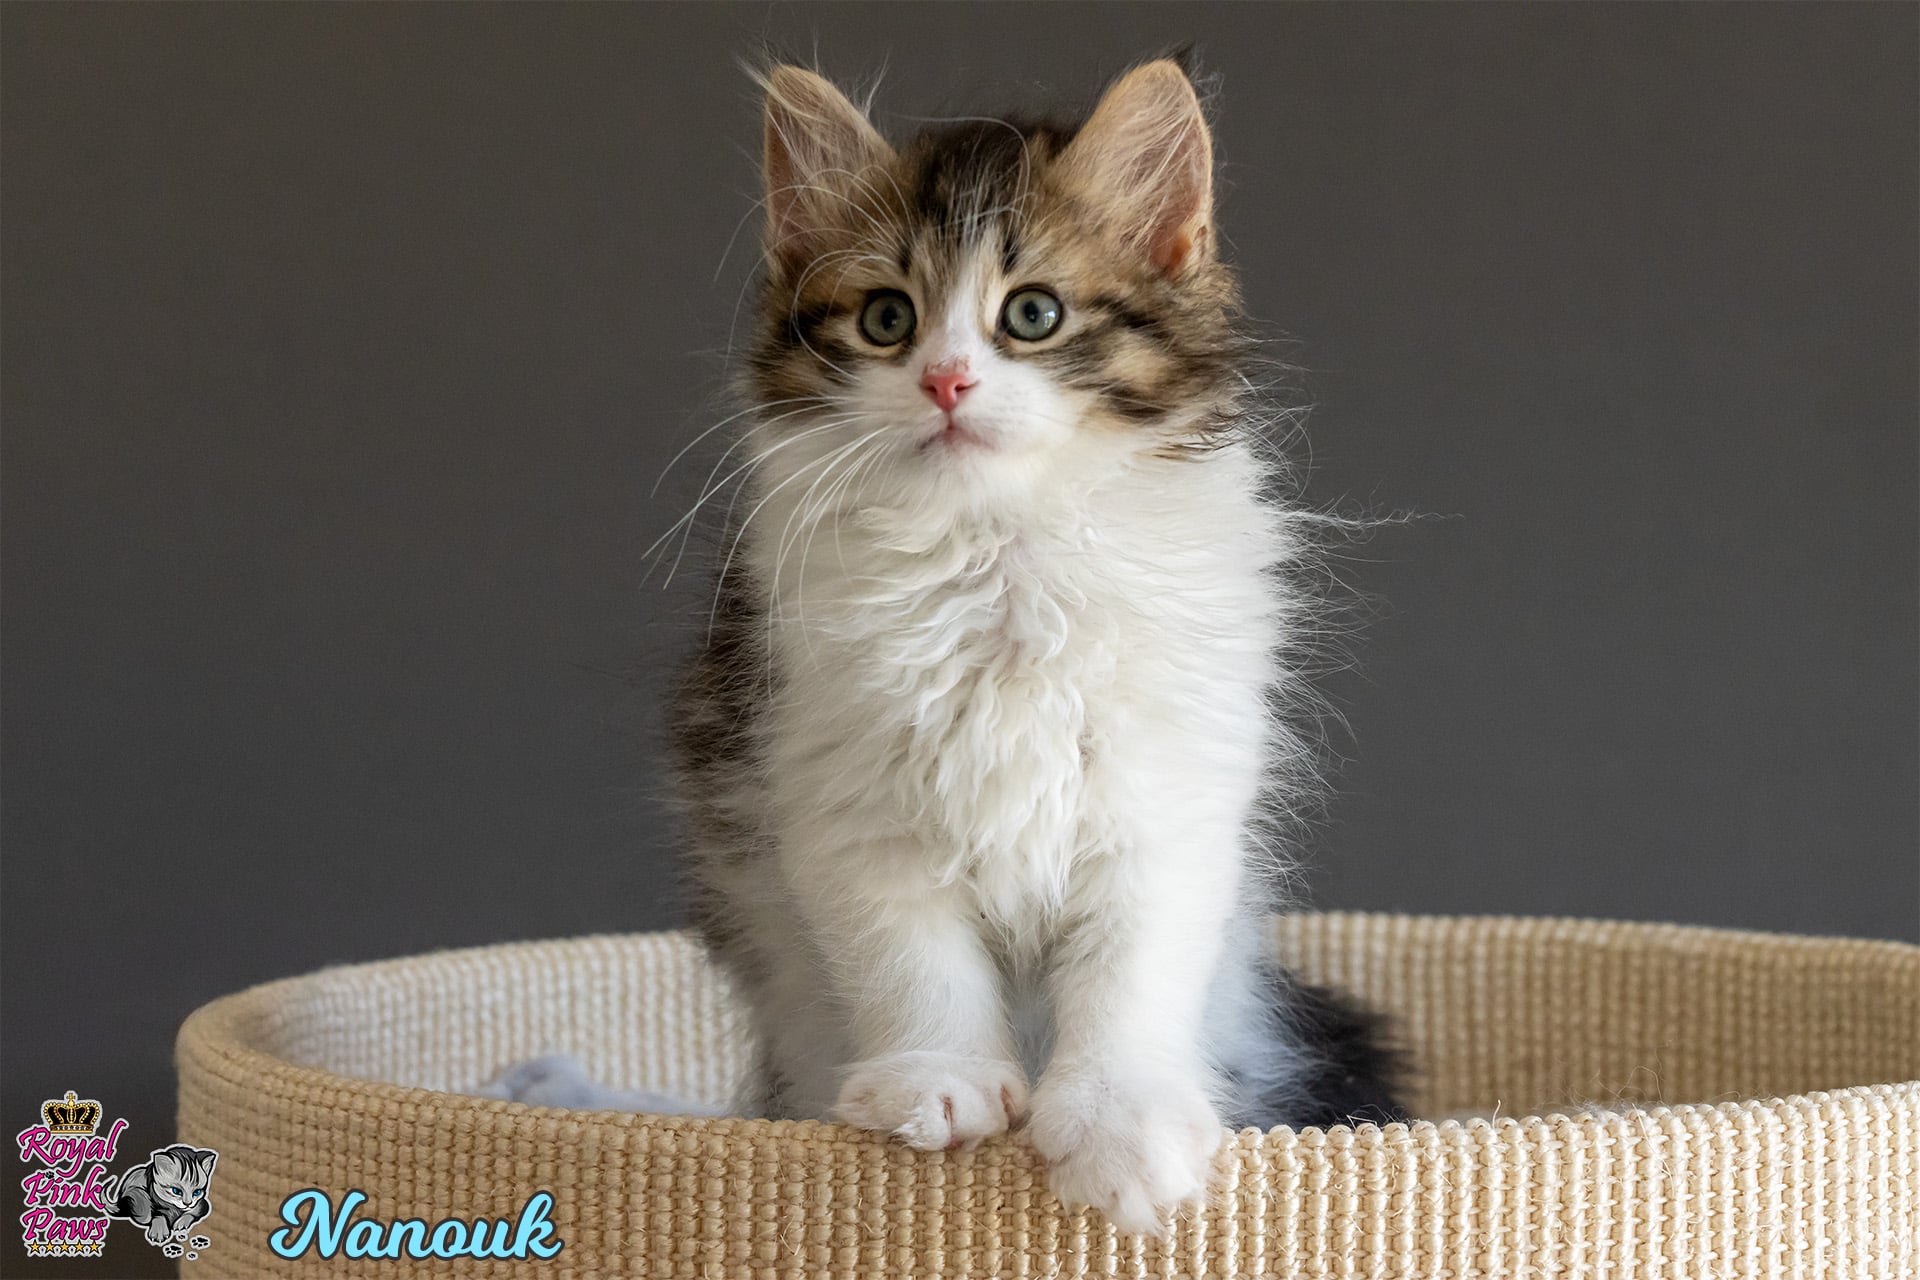 Sibirische Katze - Nanouk Royal Pink Paws